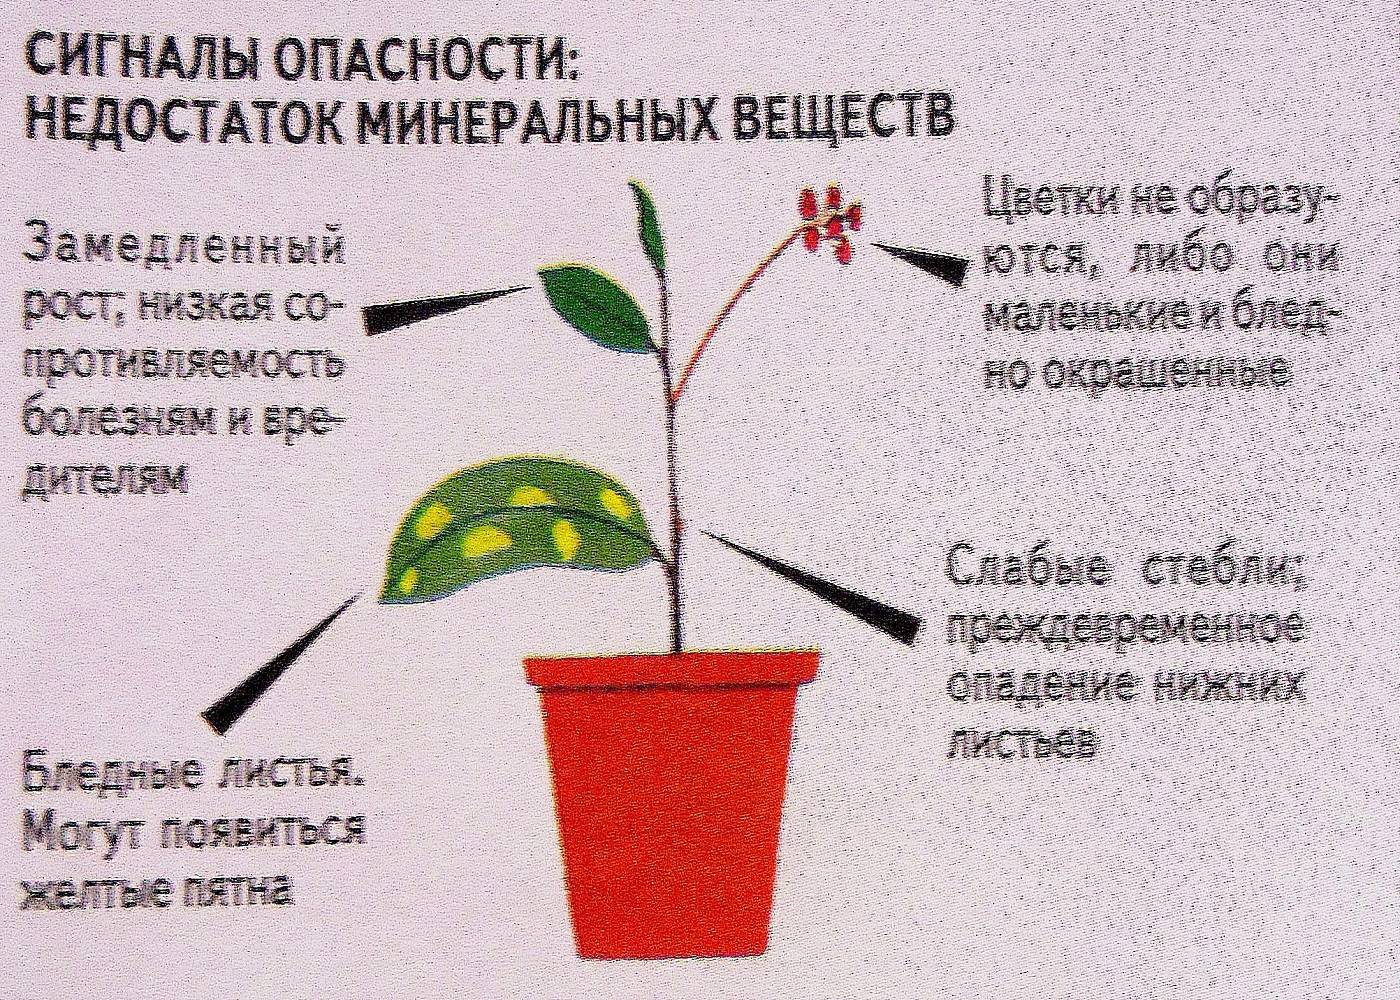 Комнатный ирис (неомарика) - выращивание, уход, цветение, фото